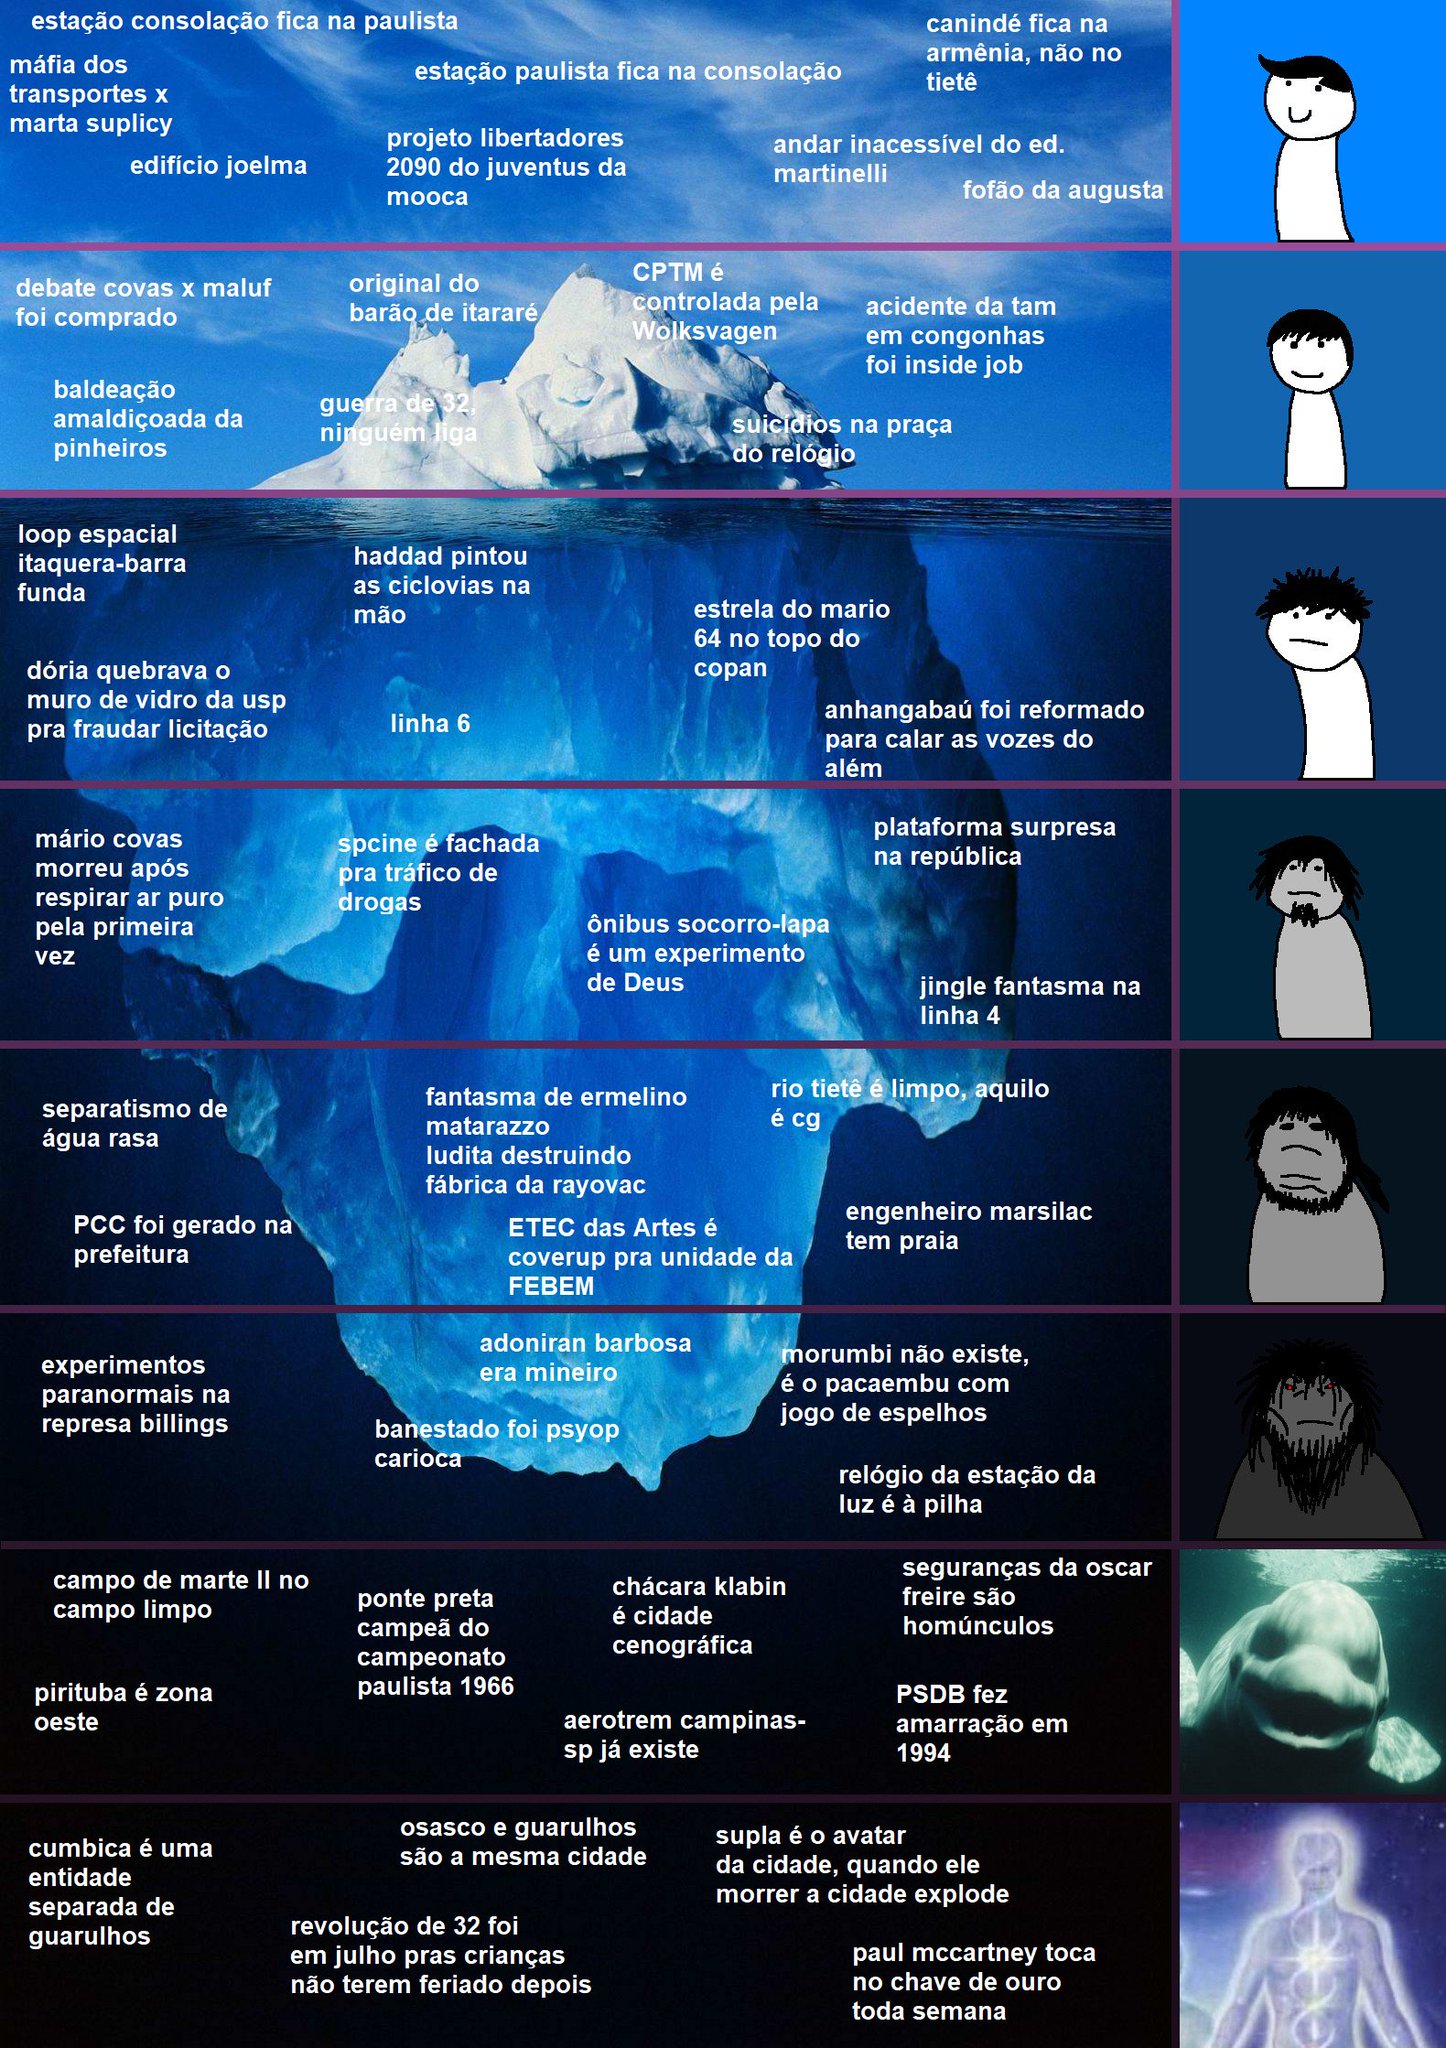 Fala Gurizada, iceberg concluido : r/TocadoFoxy